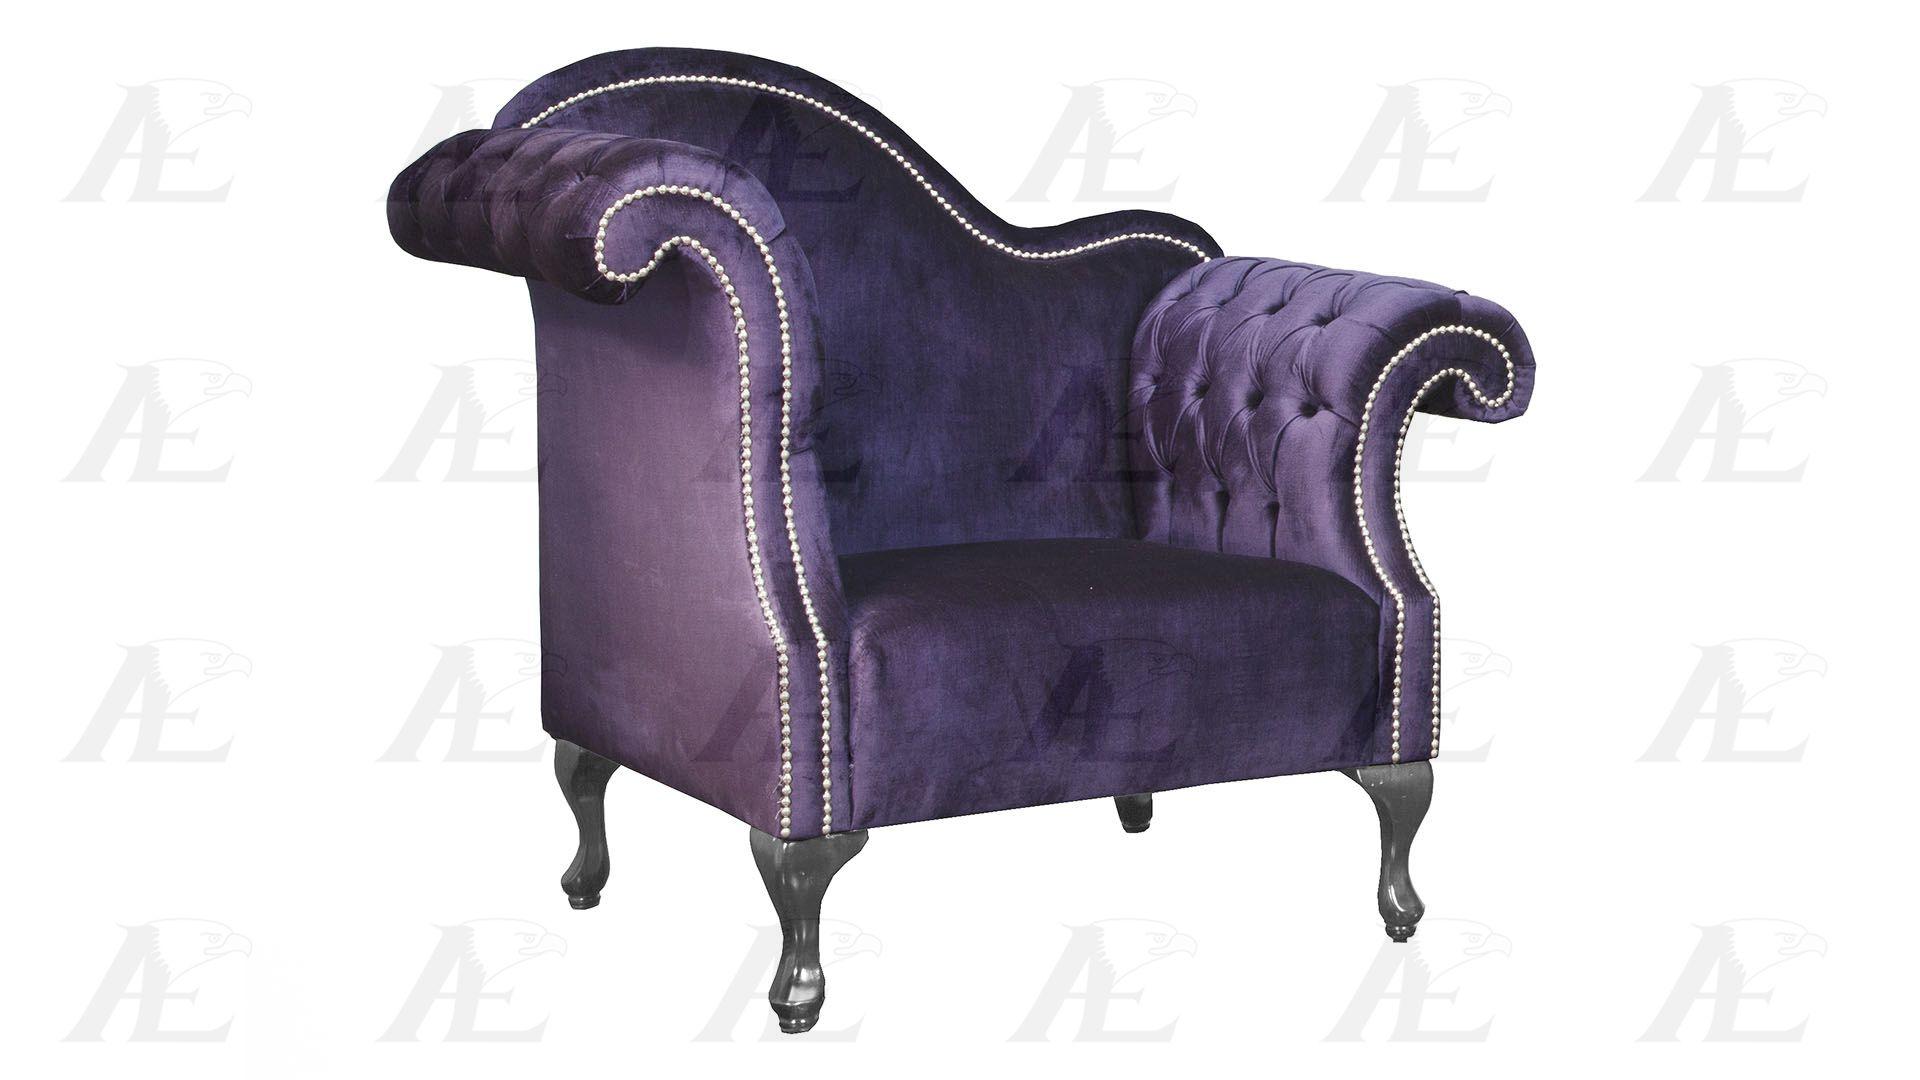 

    
AE2601-NB-2PC American Eagle Furniture Sofa Set
